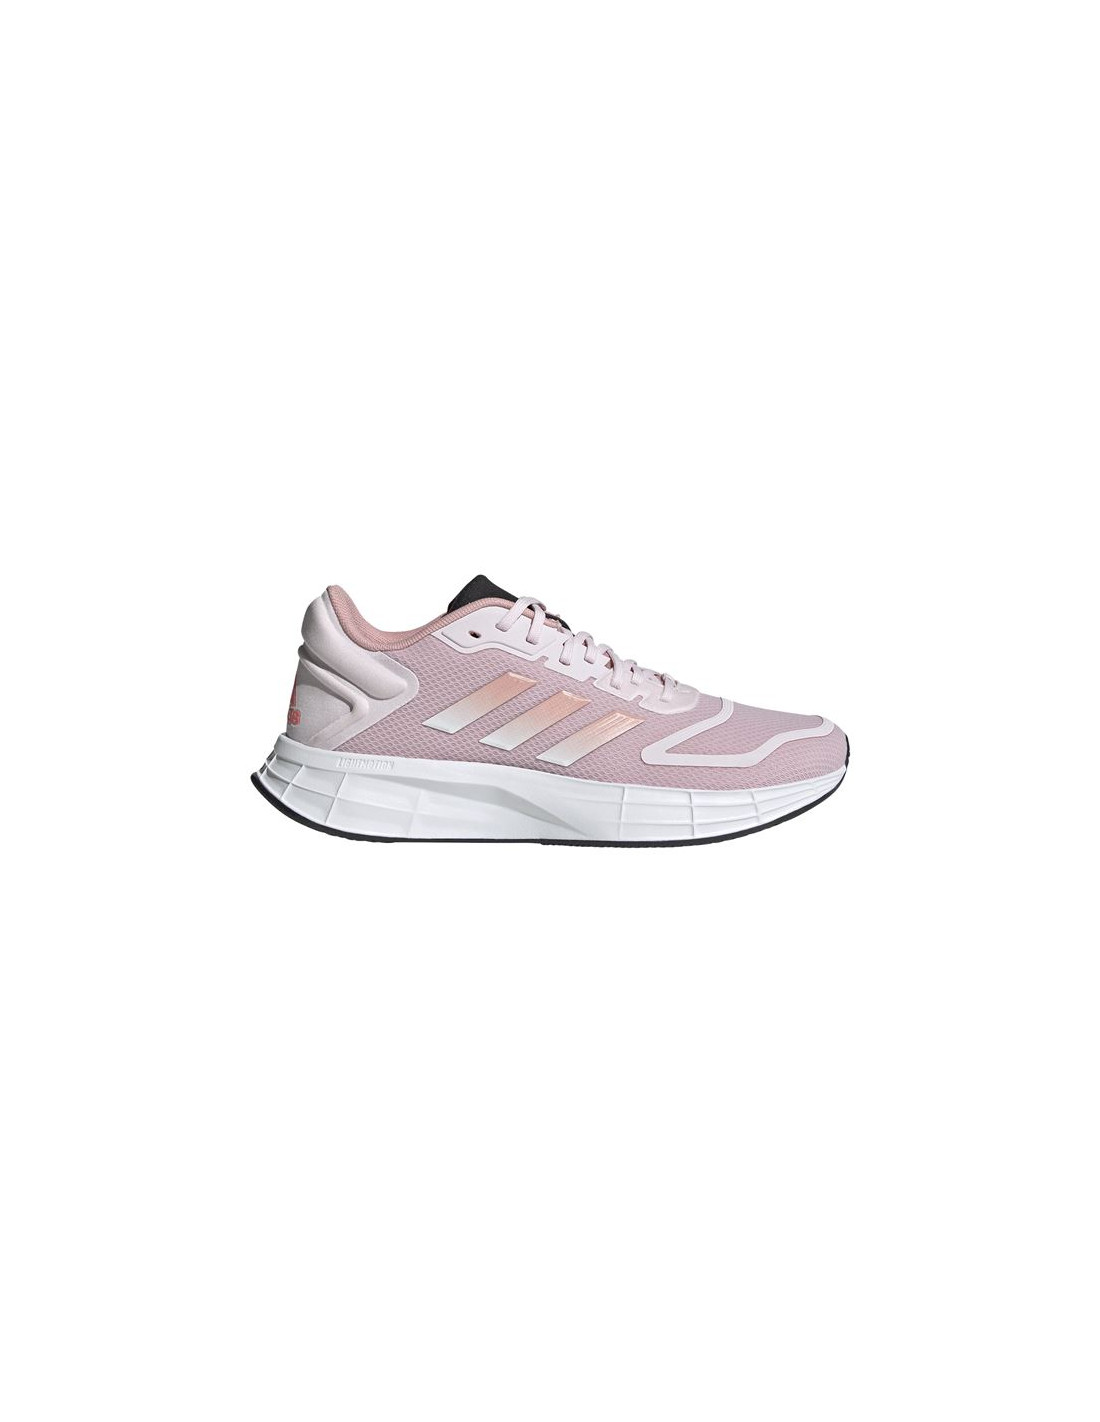 Zapatillas de running adidas duramo sl 2.0 w pink